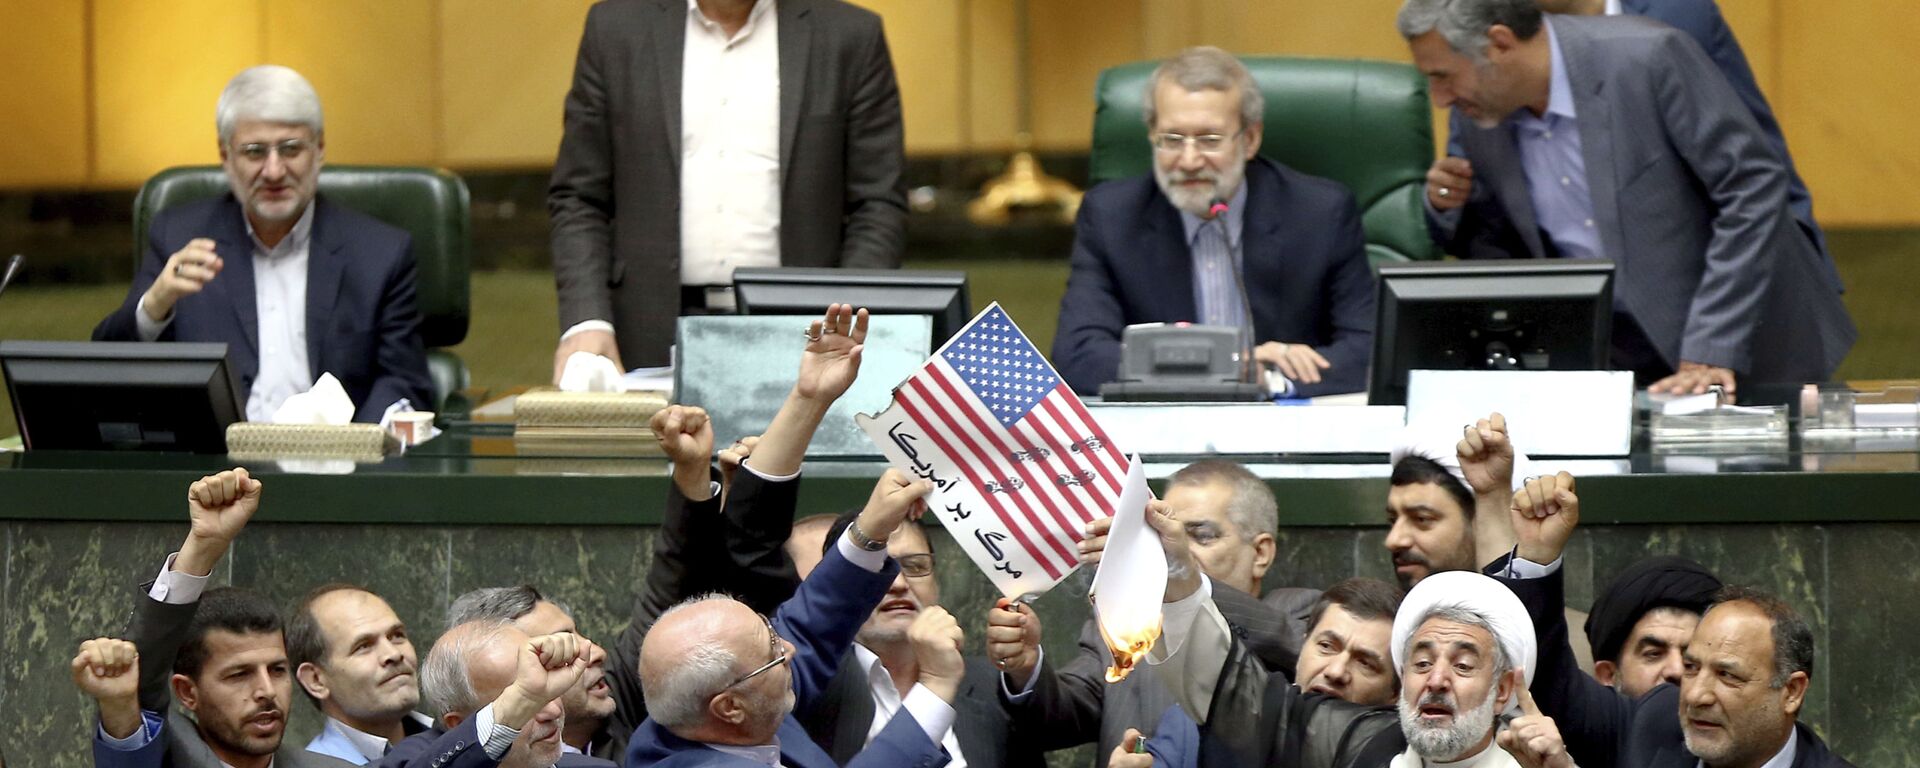  البرلمان الإيراني يحرق أوراق عليها علم الولايات المتحدة بعد خروج دونالد ترامب من صفقة الاتفاق النووي مع إيران، 9 مايو/ أيار 2018 - سبوتنيك عربي, 1920, 02.04.2021